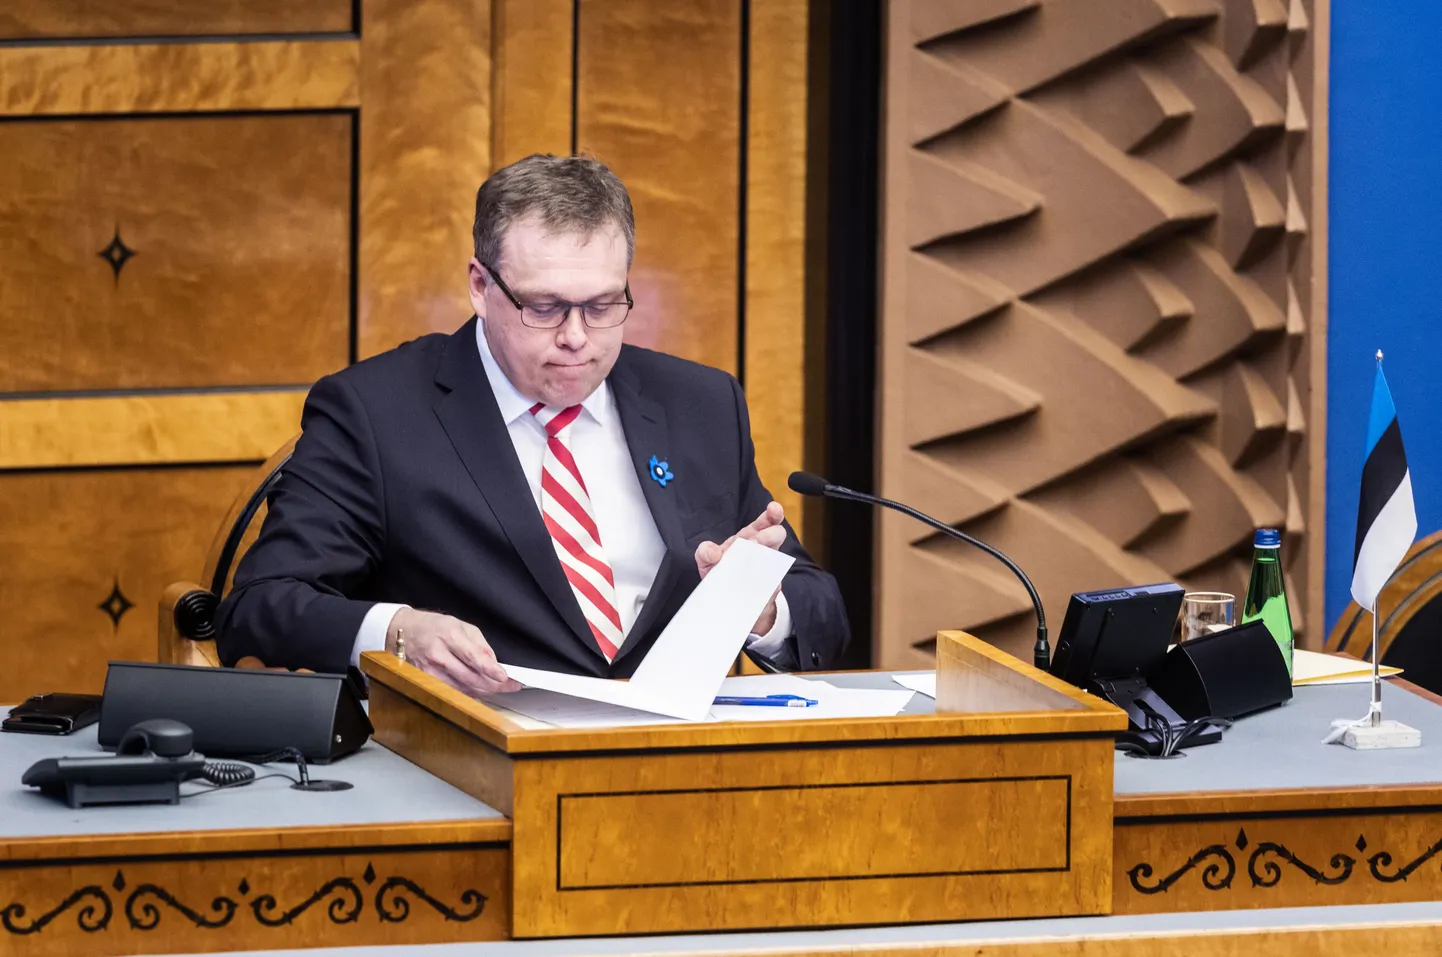 Riigikogu esimehel Lauri Hussaril (Eesti 200) tuli riigikogu töökord endale kohe uue ameti alguses detailideni selgeks teha, kuna opositsioon kasutab obstruktsiooniks ära seaduses ette nähtud võimalused.